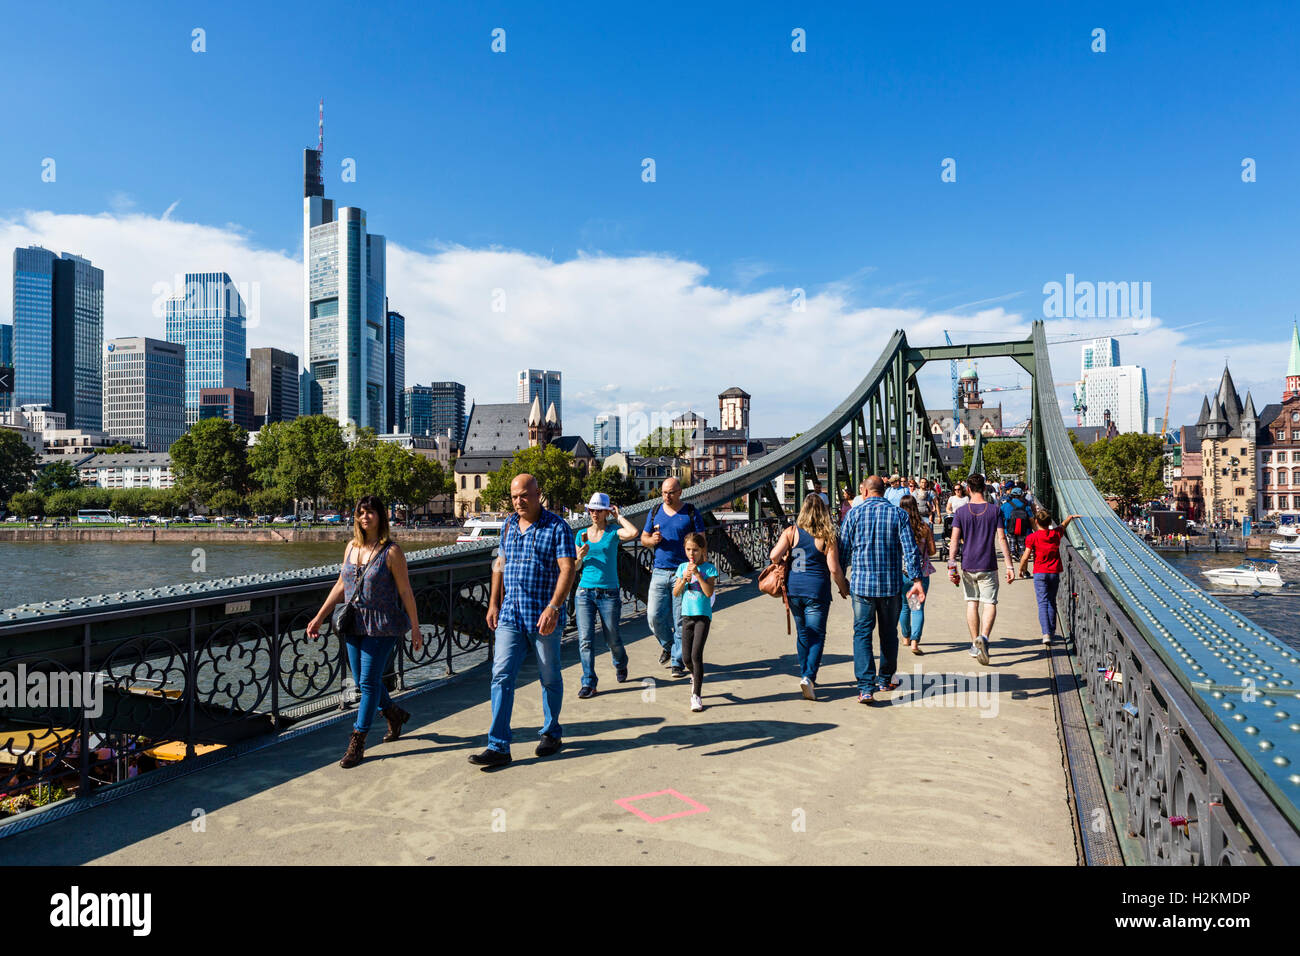 Ciudad de Frankfurt. El Eiserner Steg sobre el río Main, mirando hacia el distrito financiero, Frankfurt, Hesse, Alemania Foto de stock